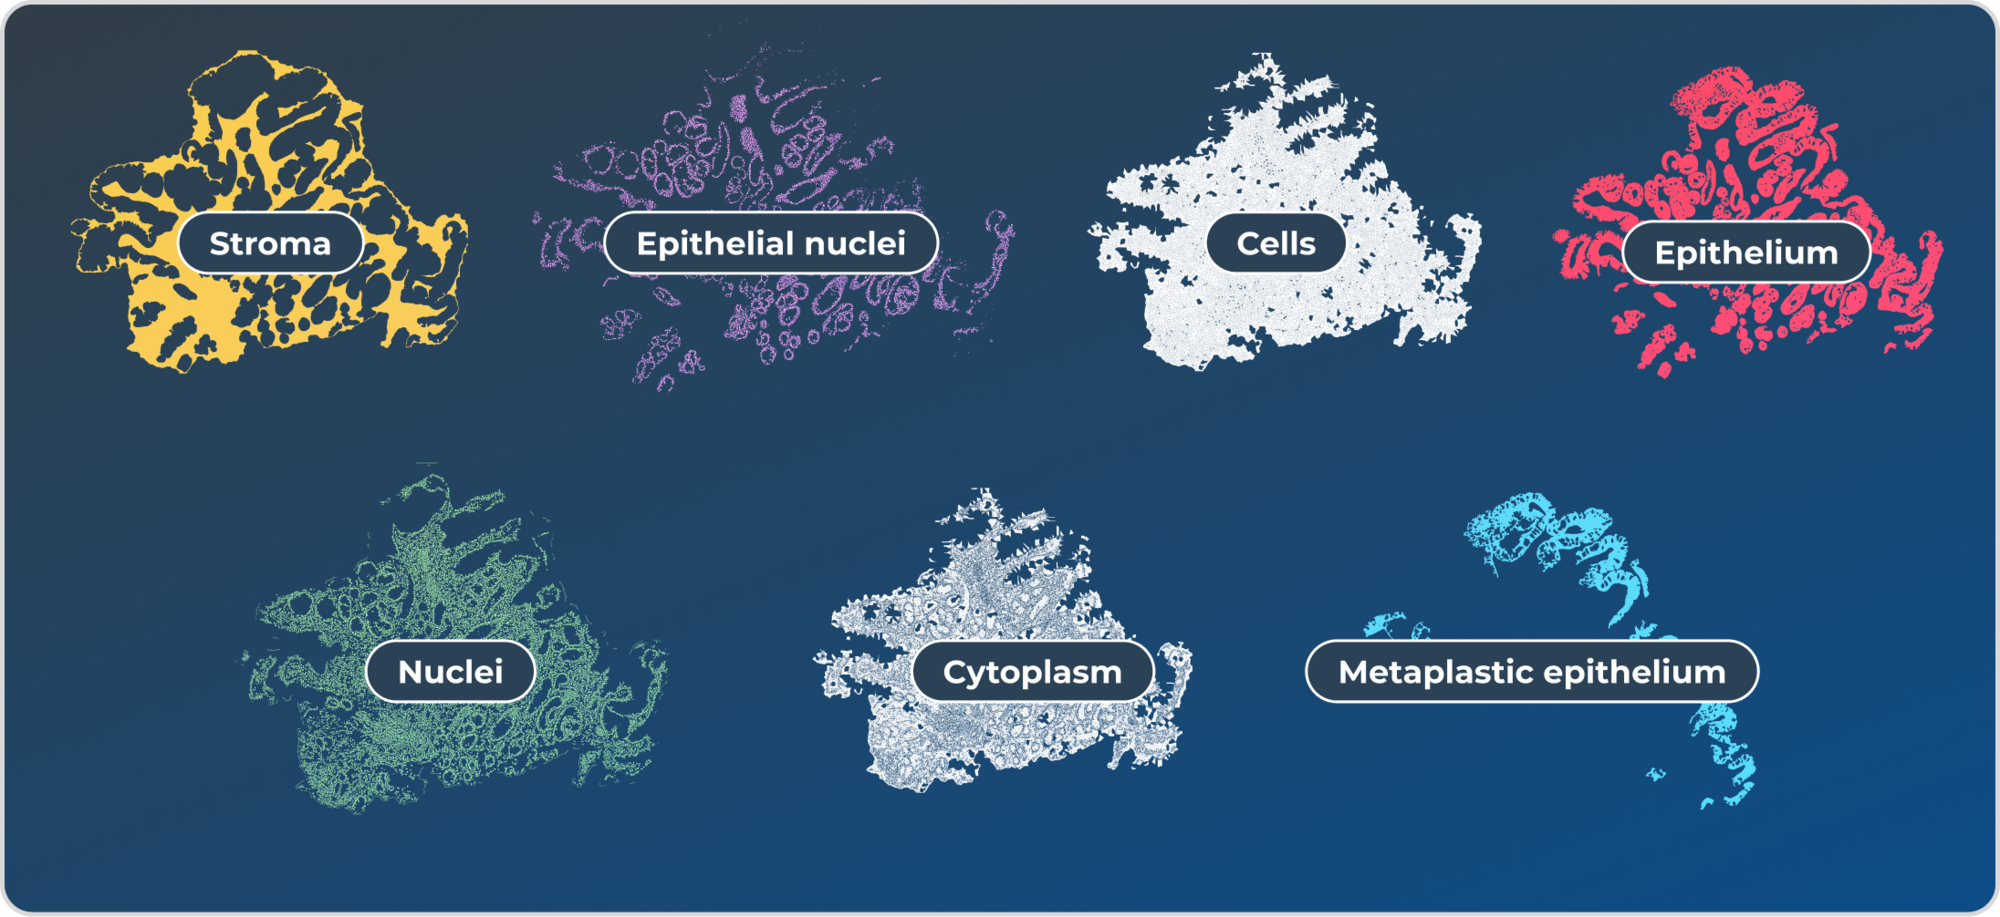 Stroma, Epithelial nuclei, Cells, Epithelium, Nuclei, Cytoplasm, Metaplastic epithelium